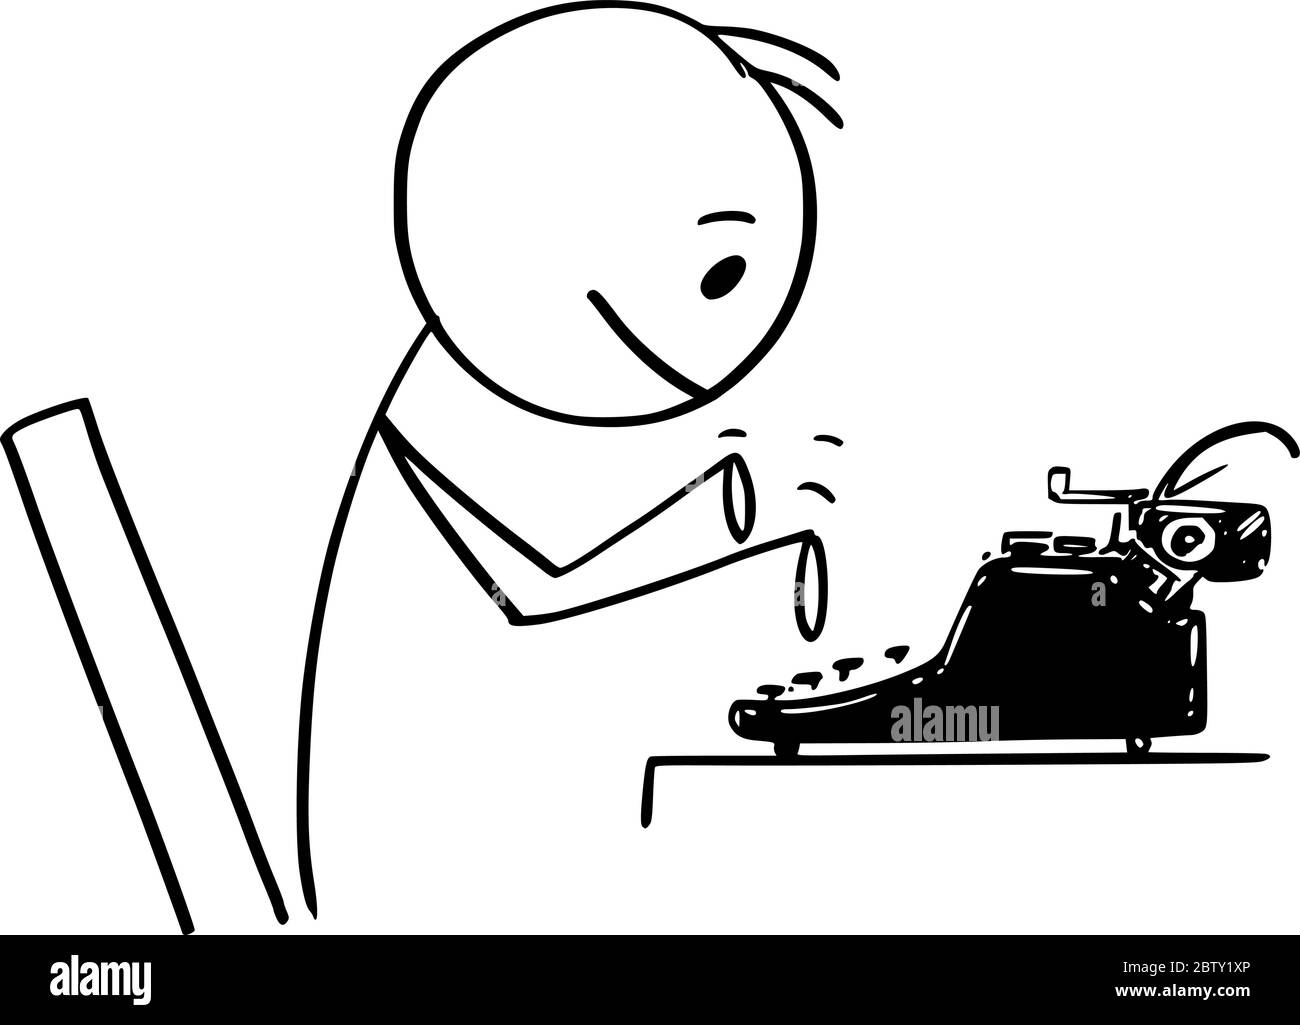 Vektor Cartoon Stick Figur Zeichnung konzeptionelle Illustration von Mann, Journalist, Autor oder Schriftsteller auf antiken Schreibmaschine Maschine tippen. Stock Vektor